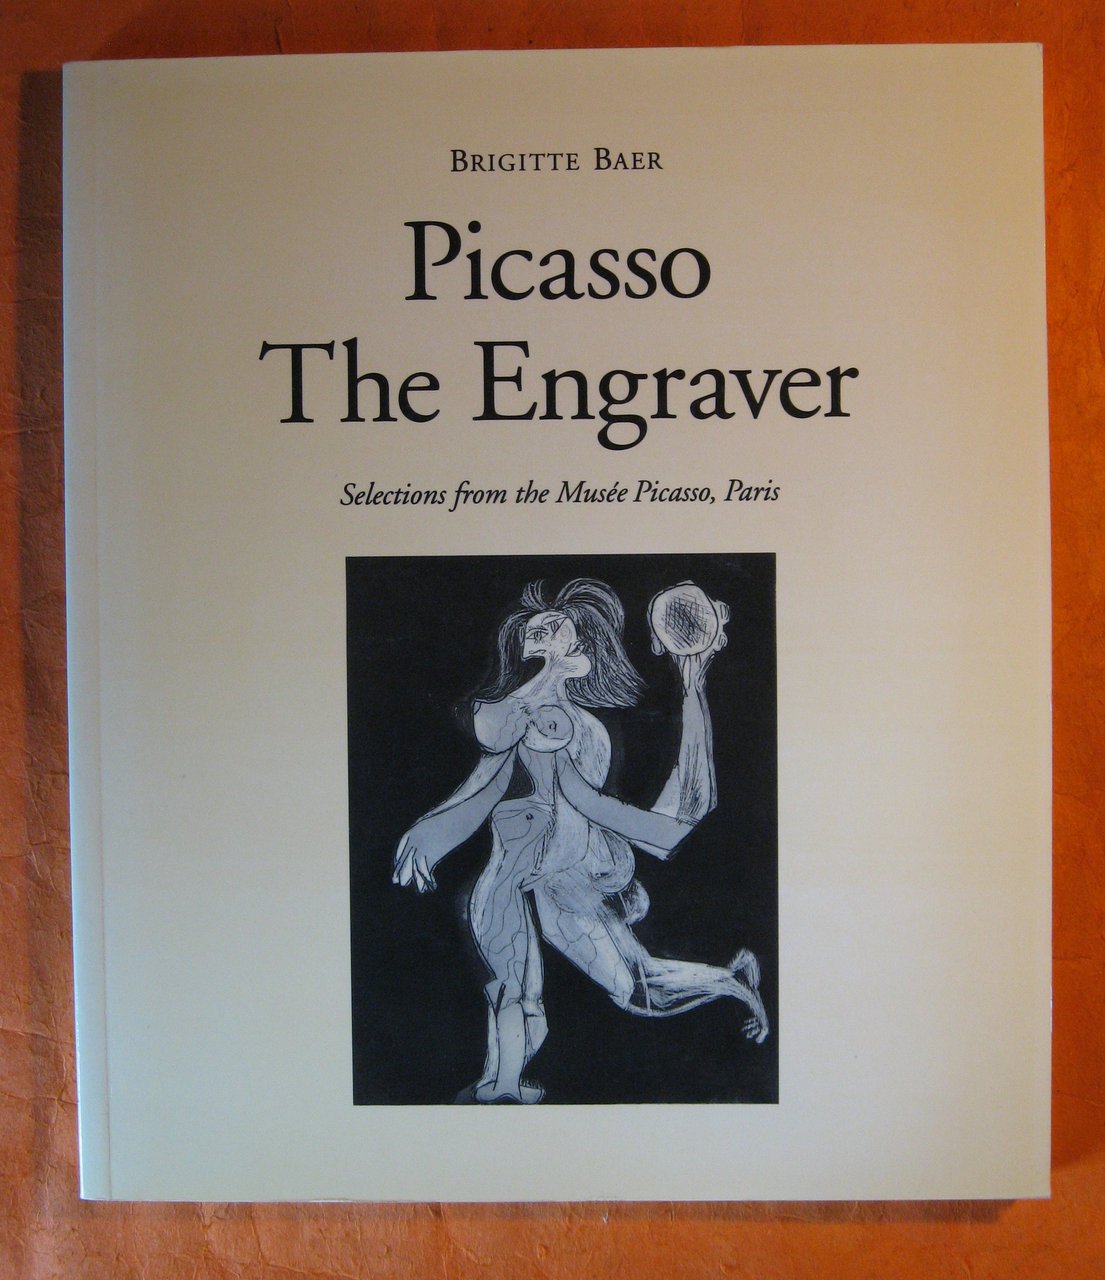 Picasso the Engraver